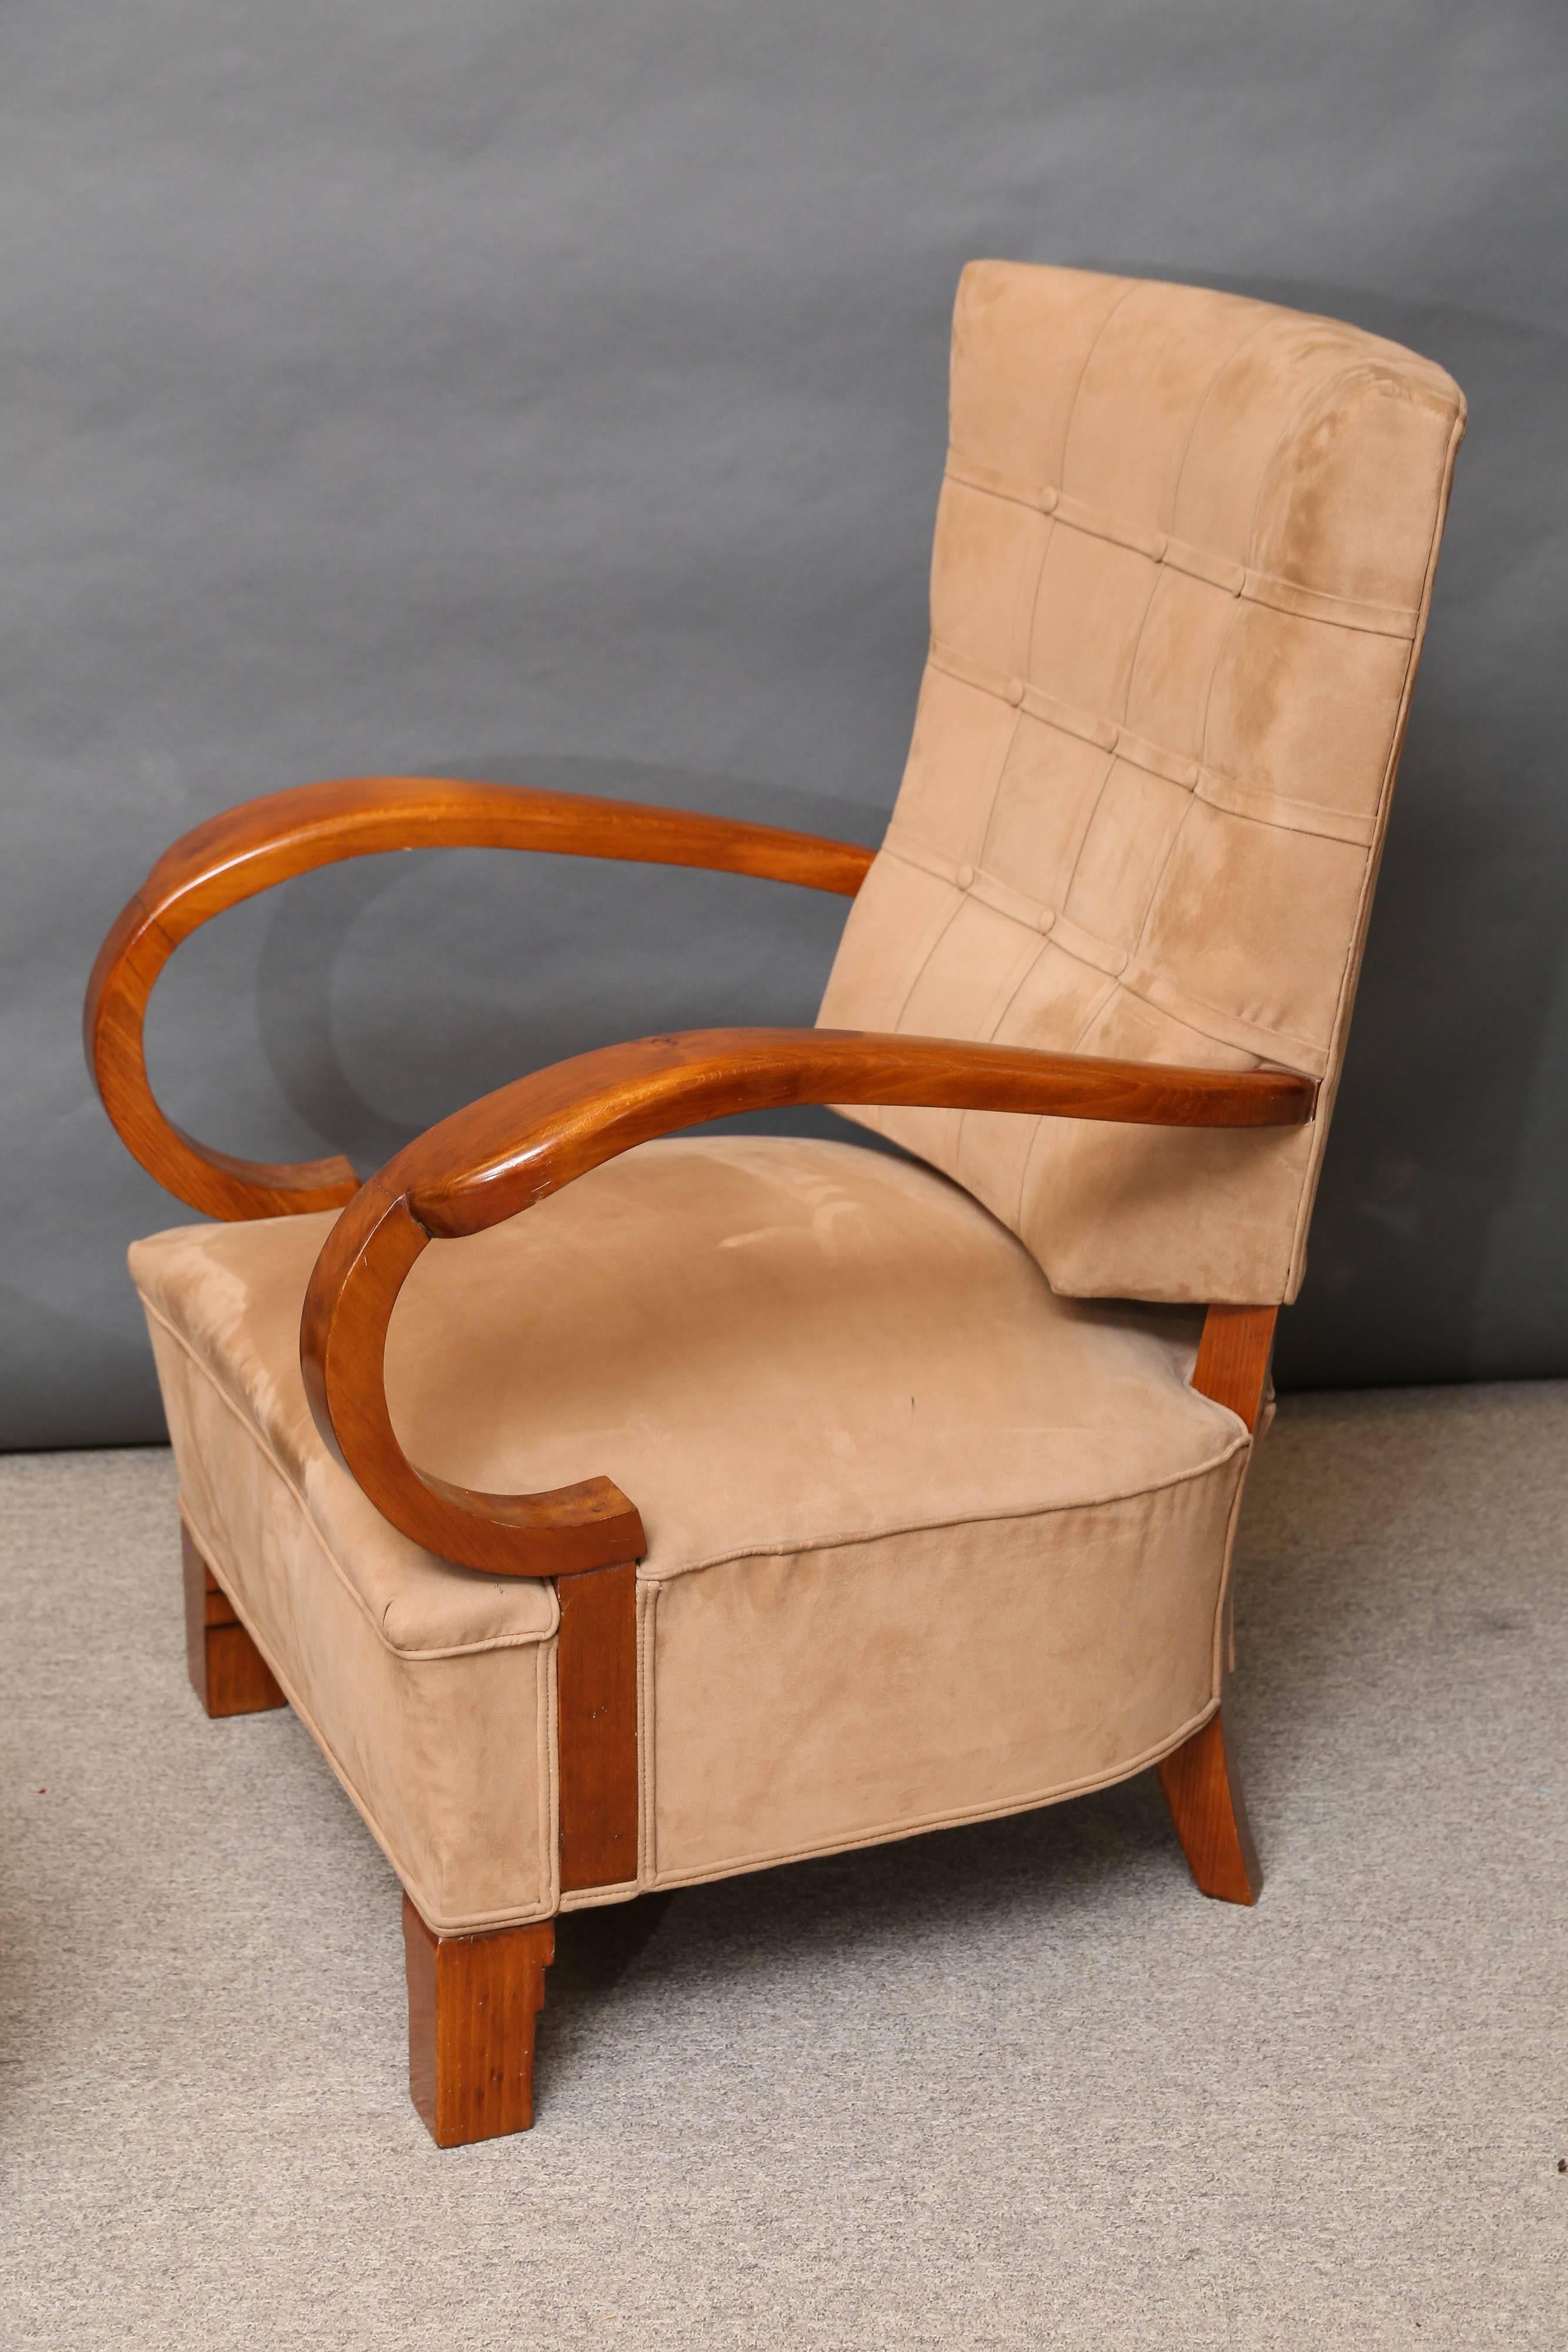 Sehr bequemer und breiter Stuhl ist neu gepolstert in der Farbe Sand samtigen Stoff.
Der Korpus des Stuhls ist aus Nussbaumholz gefertigt und mit Schellack überzogen. Der Stuhl wird durch vier kurze, quadratische Beine erhöht. Die Rückseite des